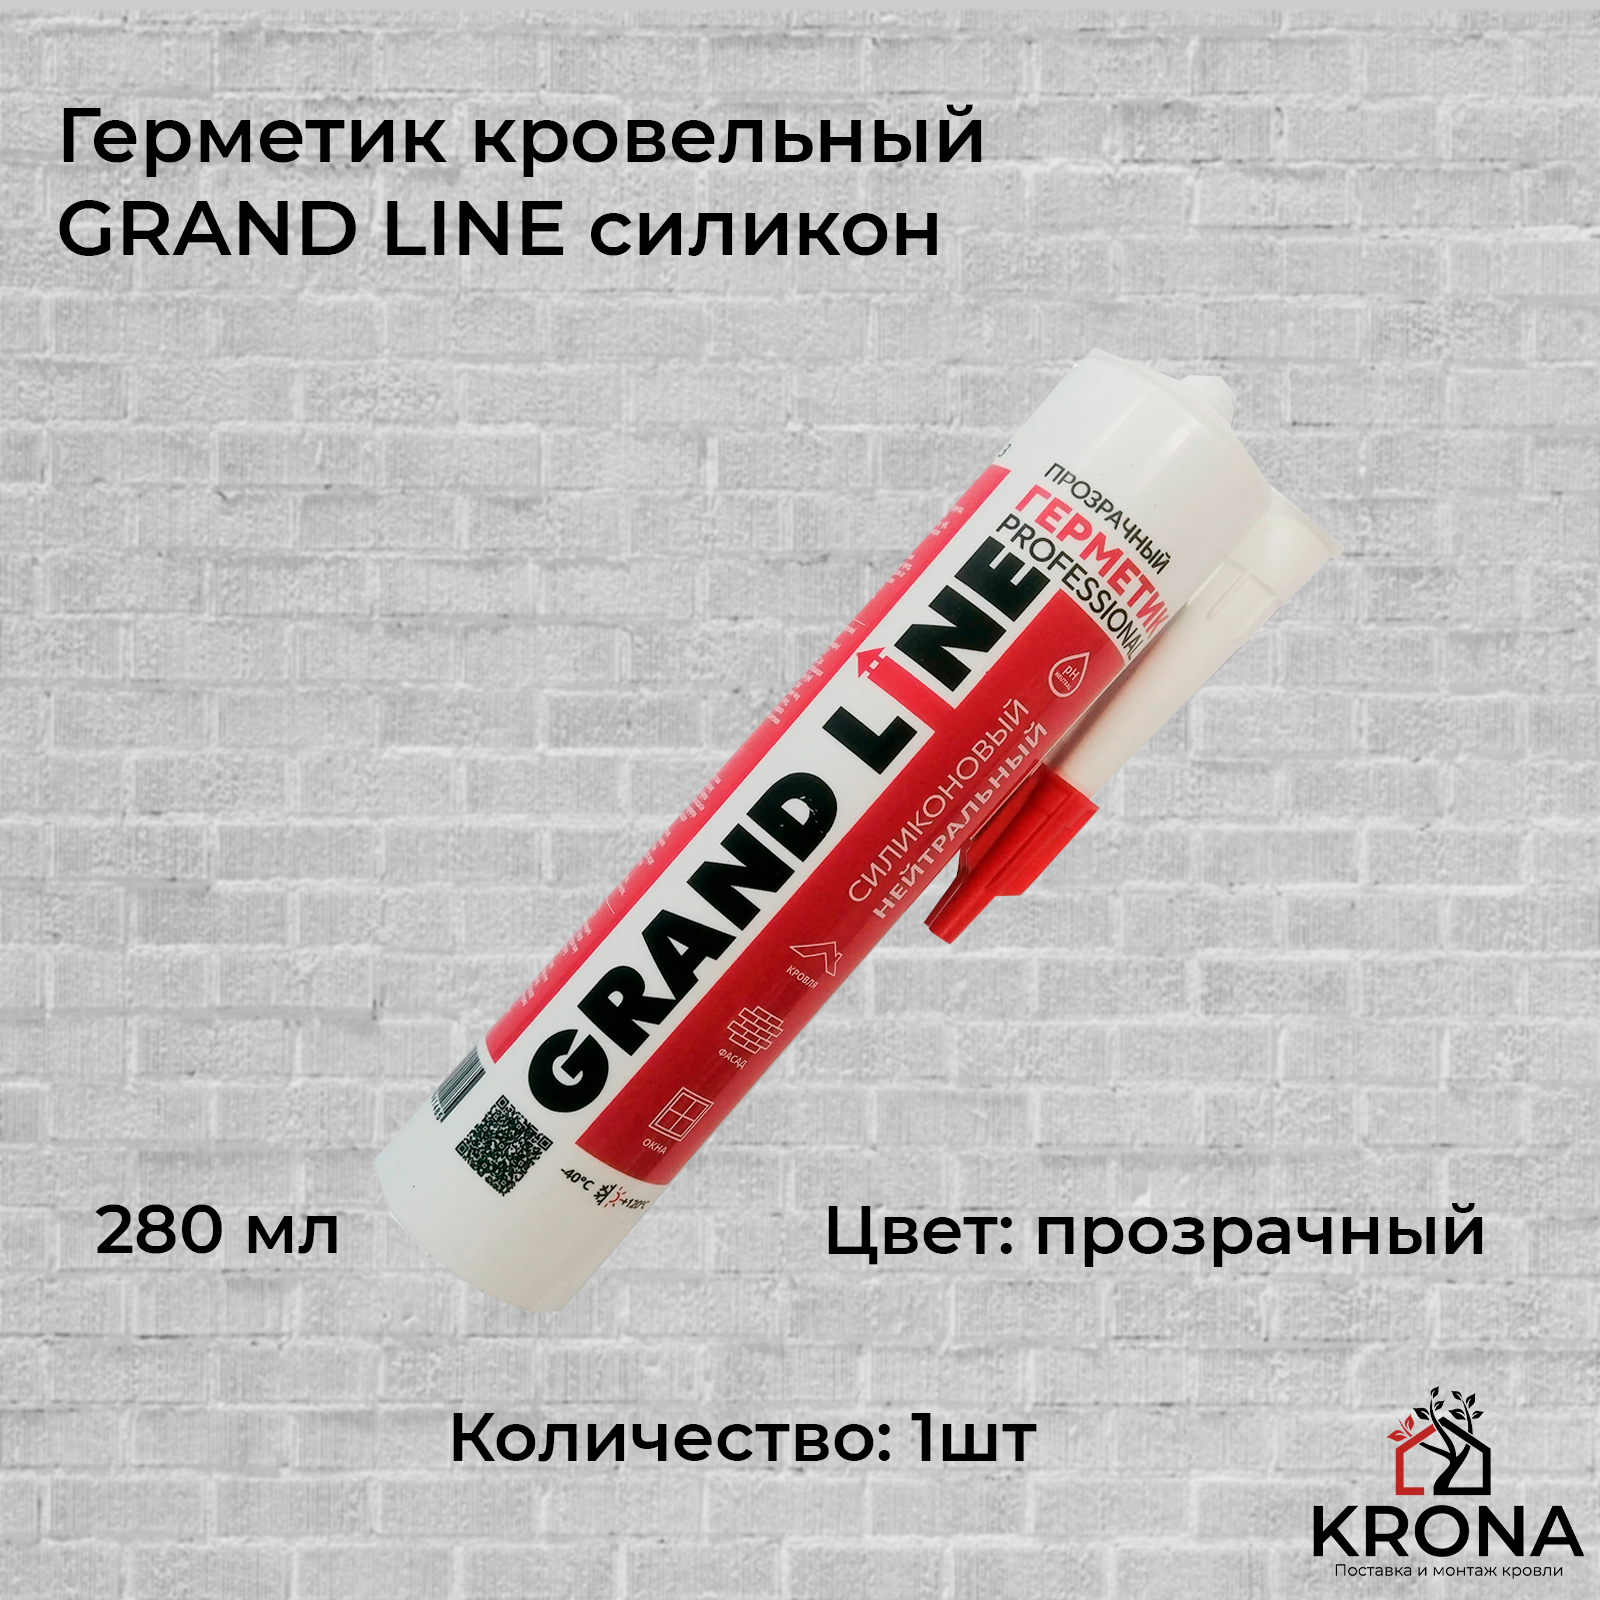 Герметик кровельный GRAND LINE силикон